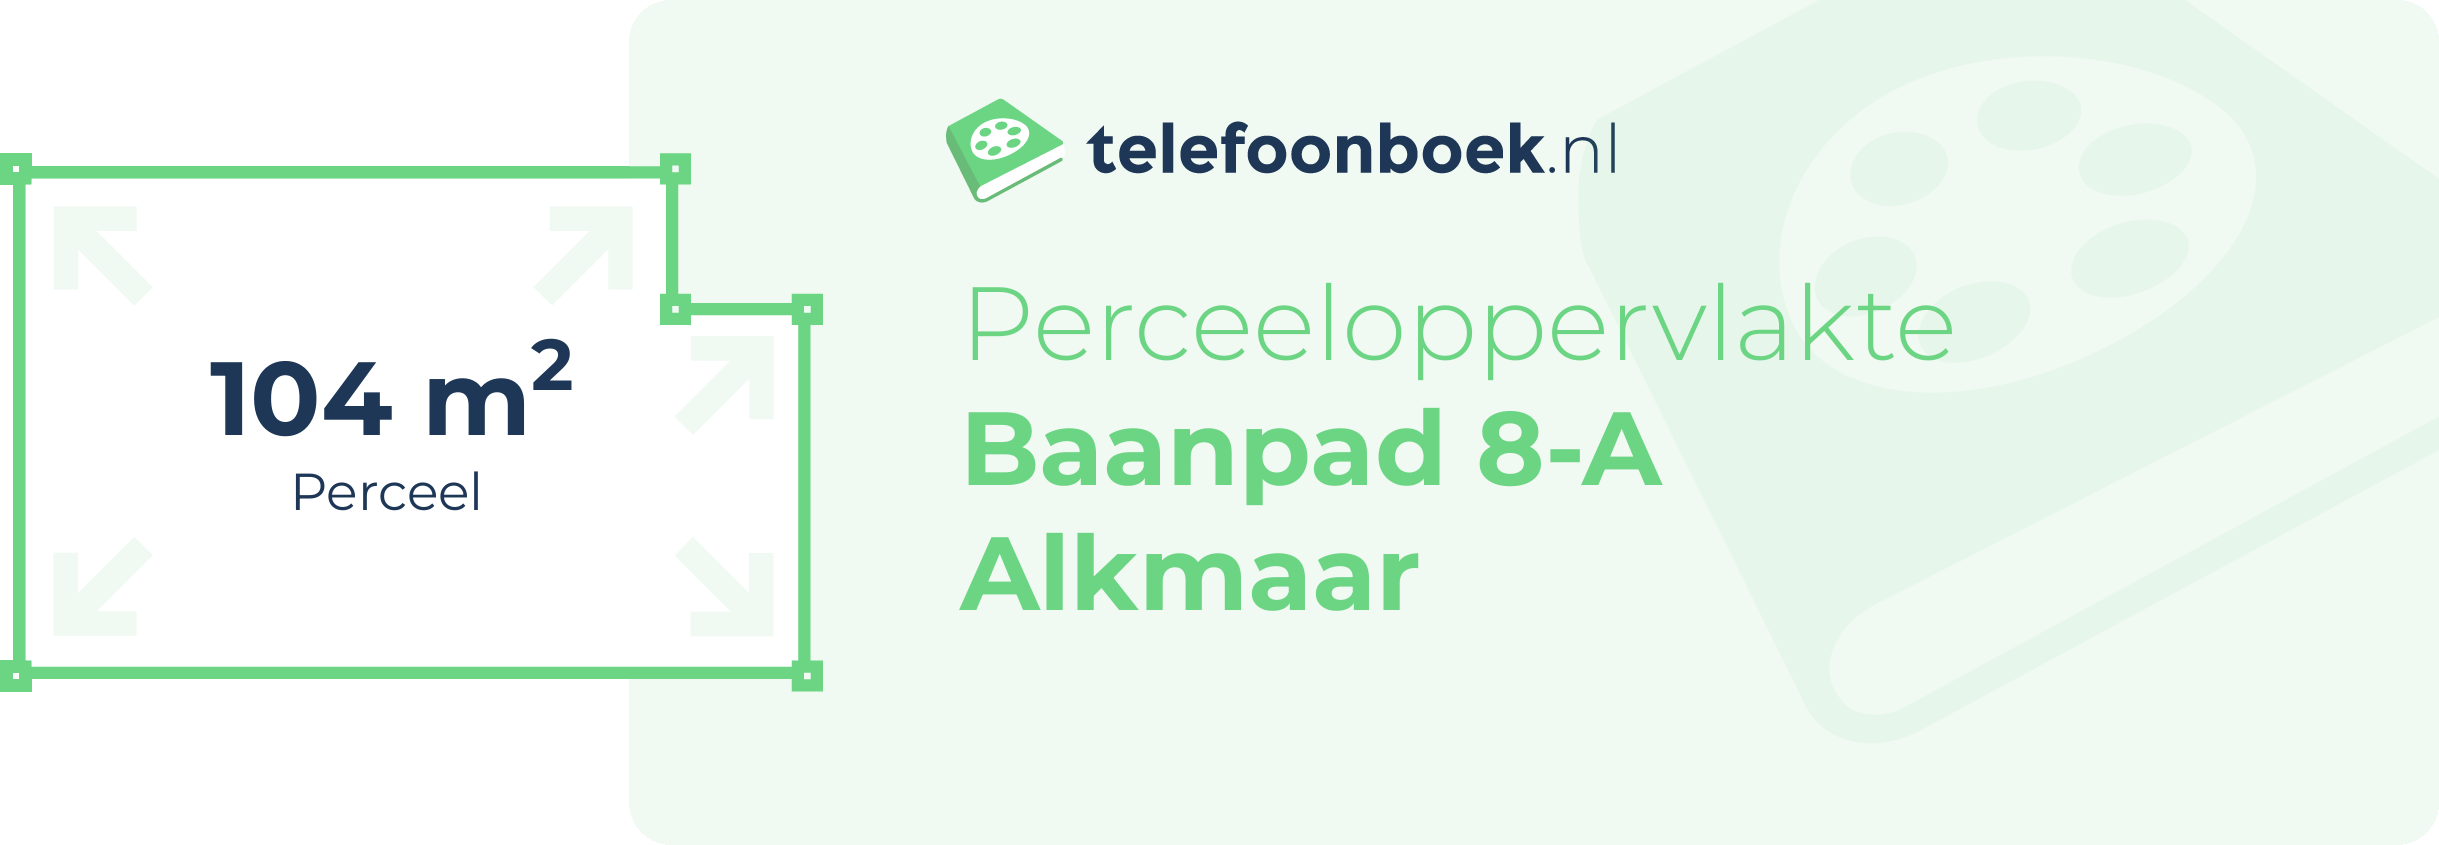 Perceeloppervlakte Baanpad 8-A Alkmaar